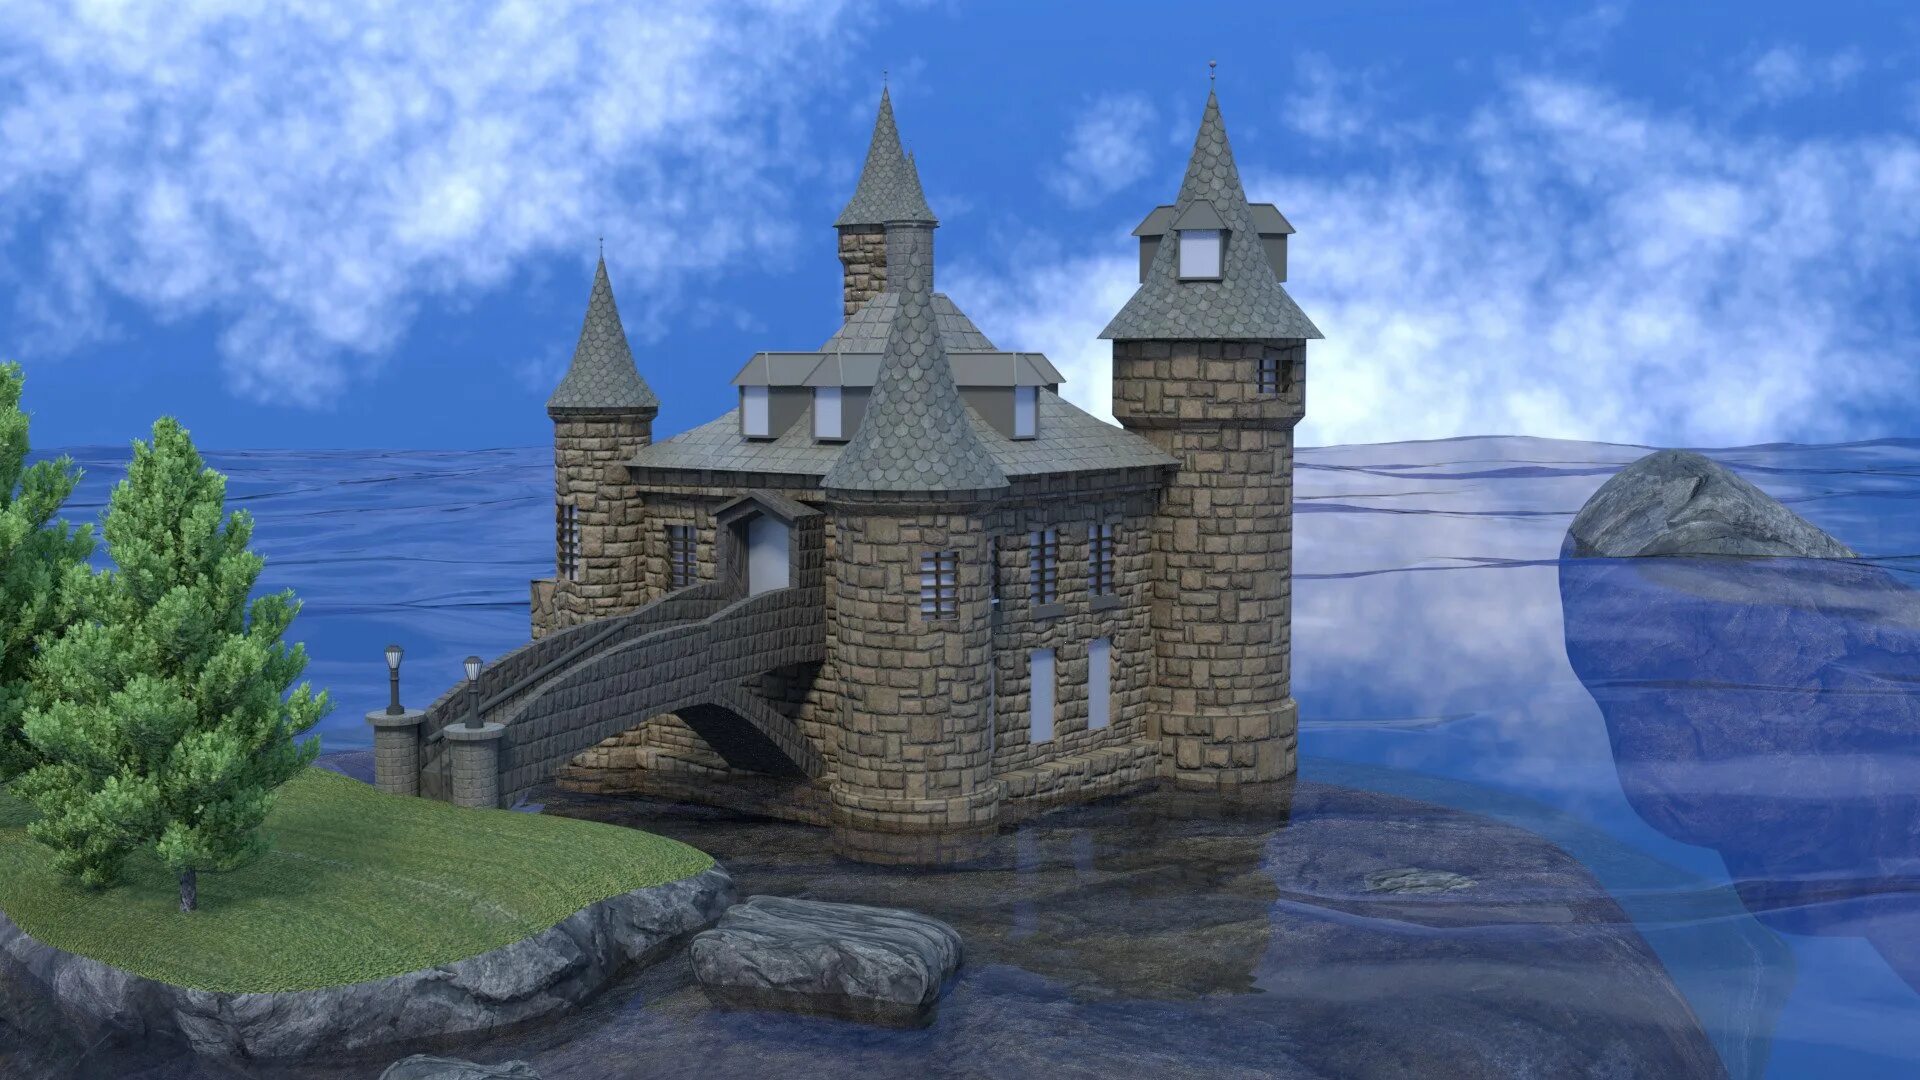 Замок 3 д. Замок в 3d Max. Замок 3-512. Hobbit Castle 3d Max. 3d модель замка.